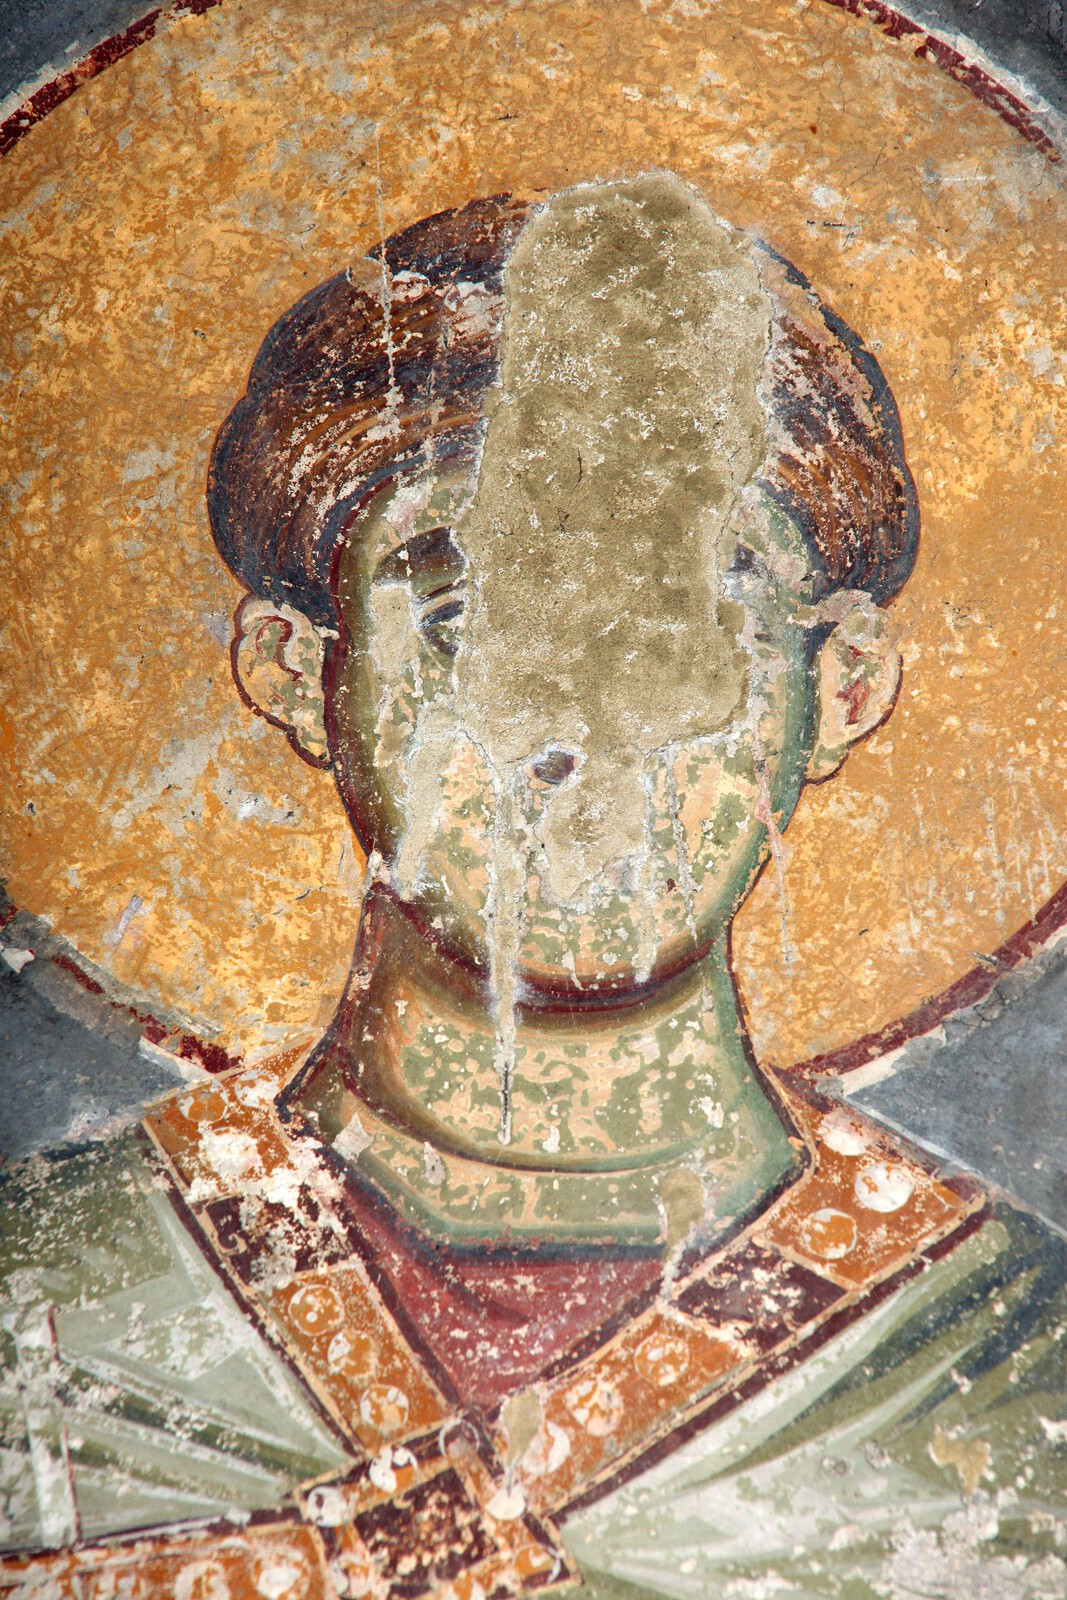 St. Demetrios, detail